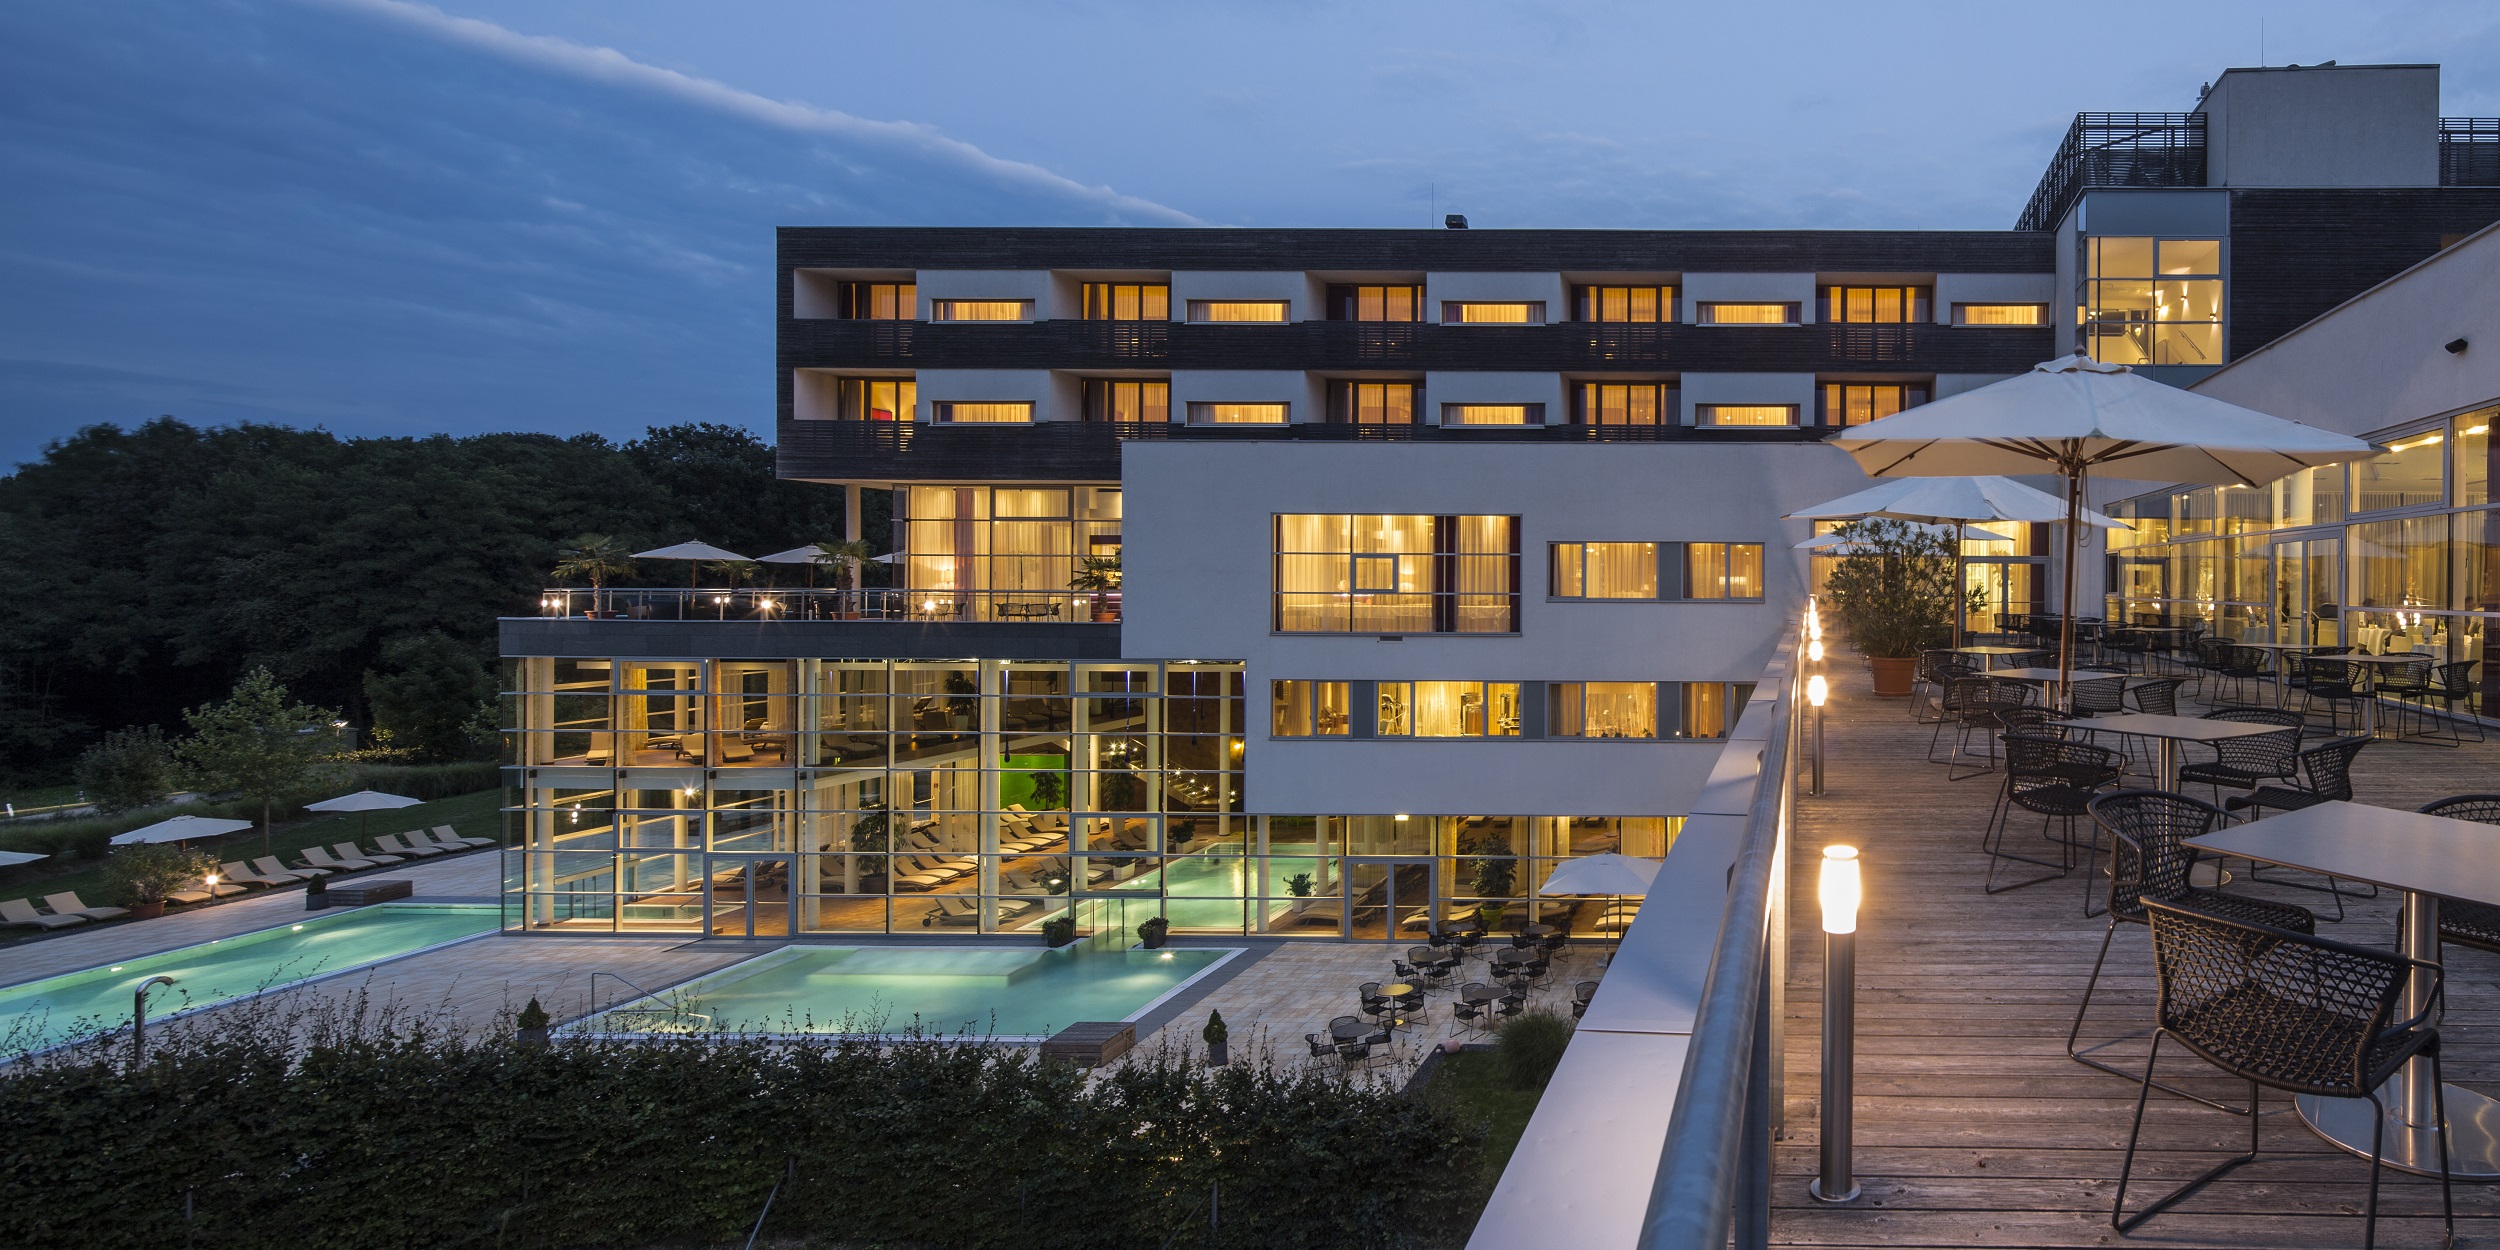 Urlaubsgutschein im Wert von 1.250 Euro für das Spa Resort Styria